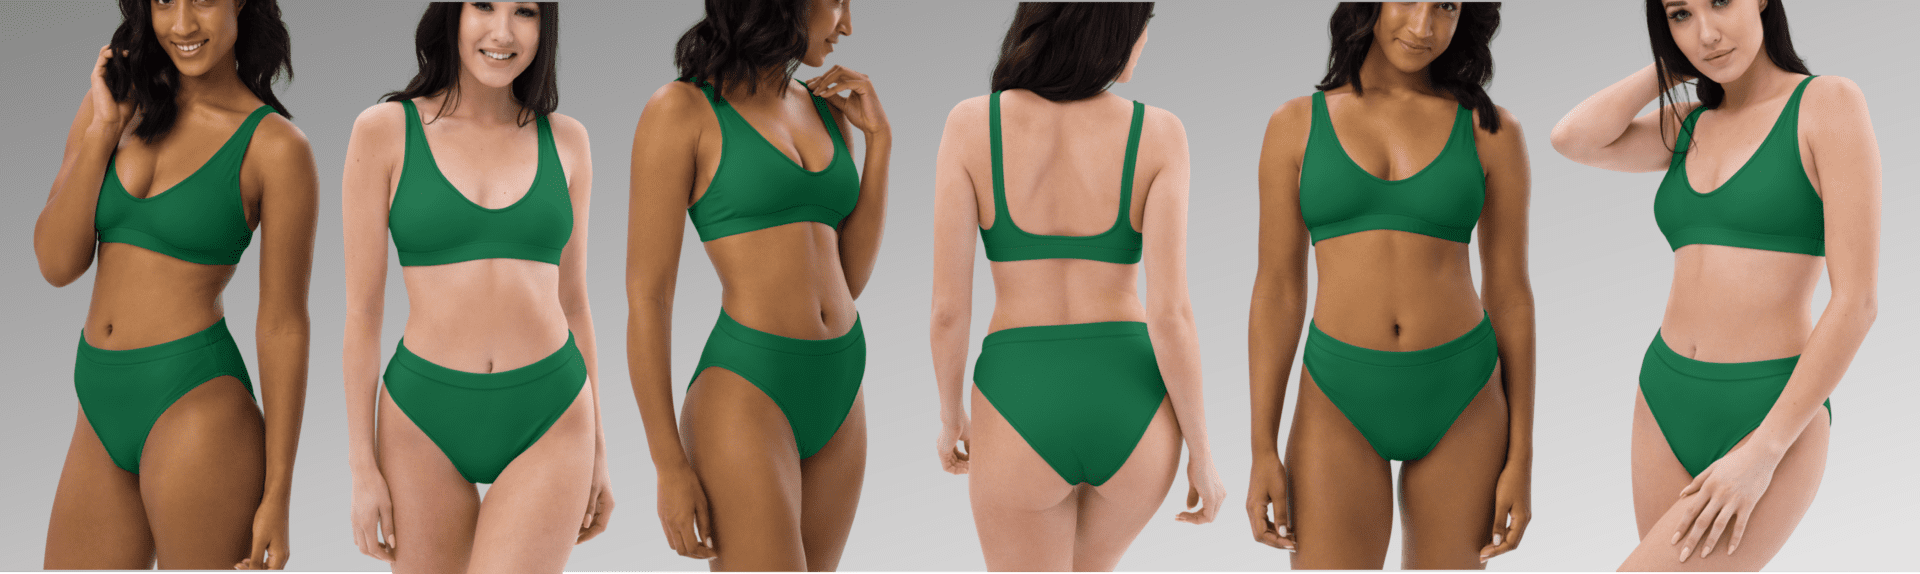 Green high-waisted bikini swimsuit.